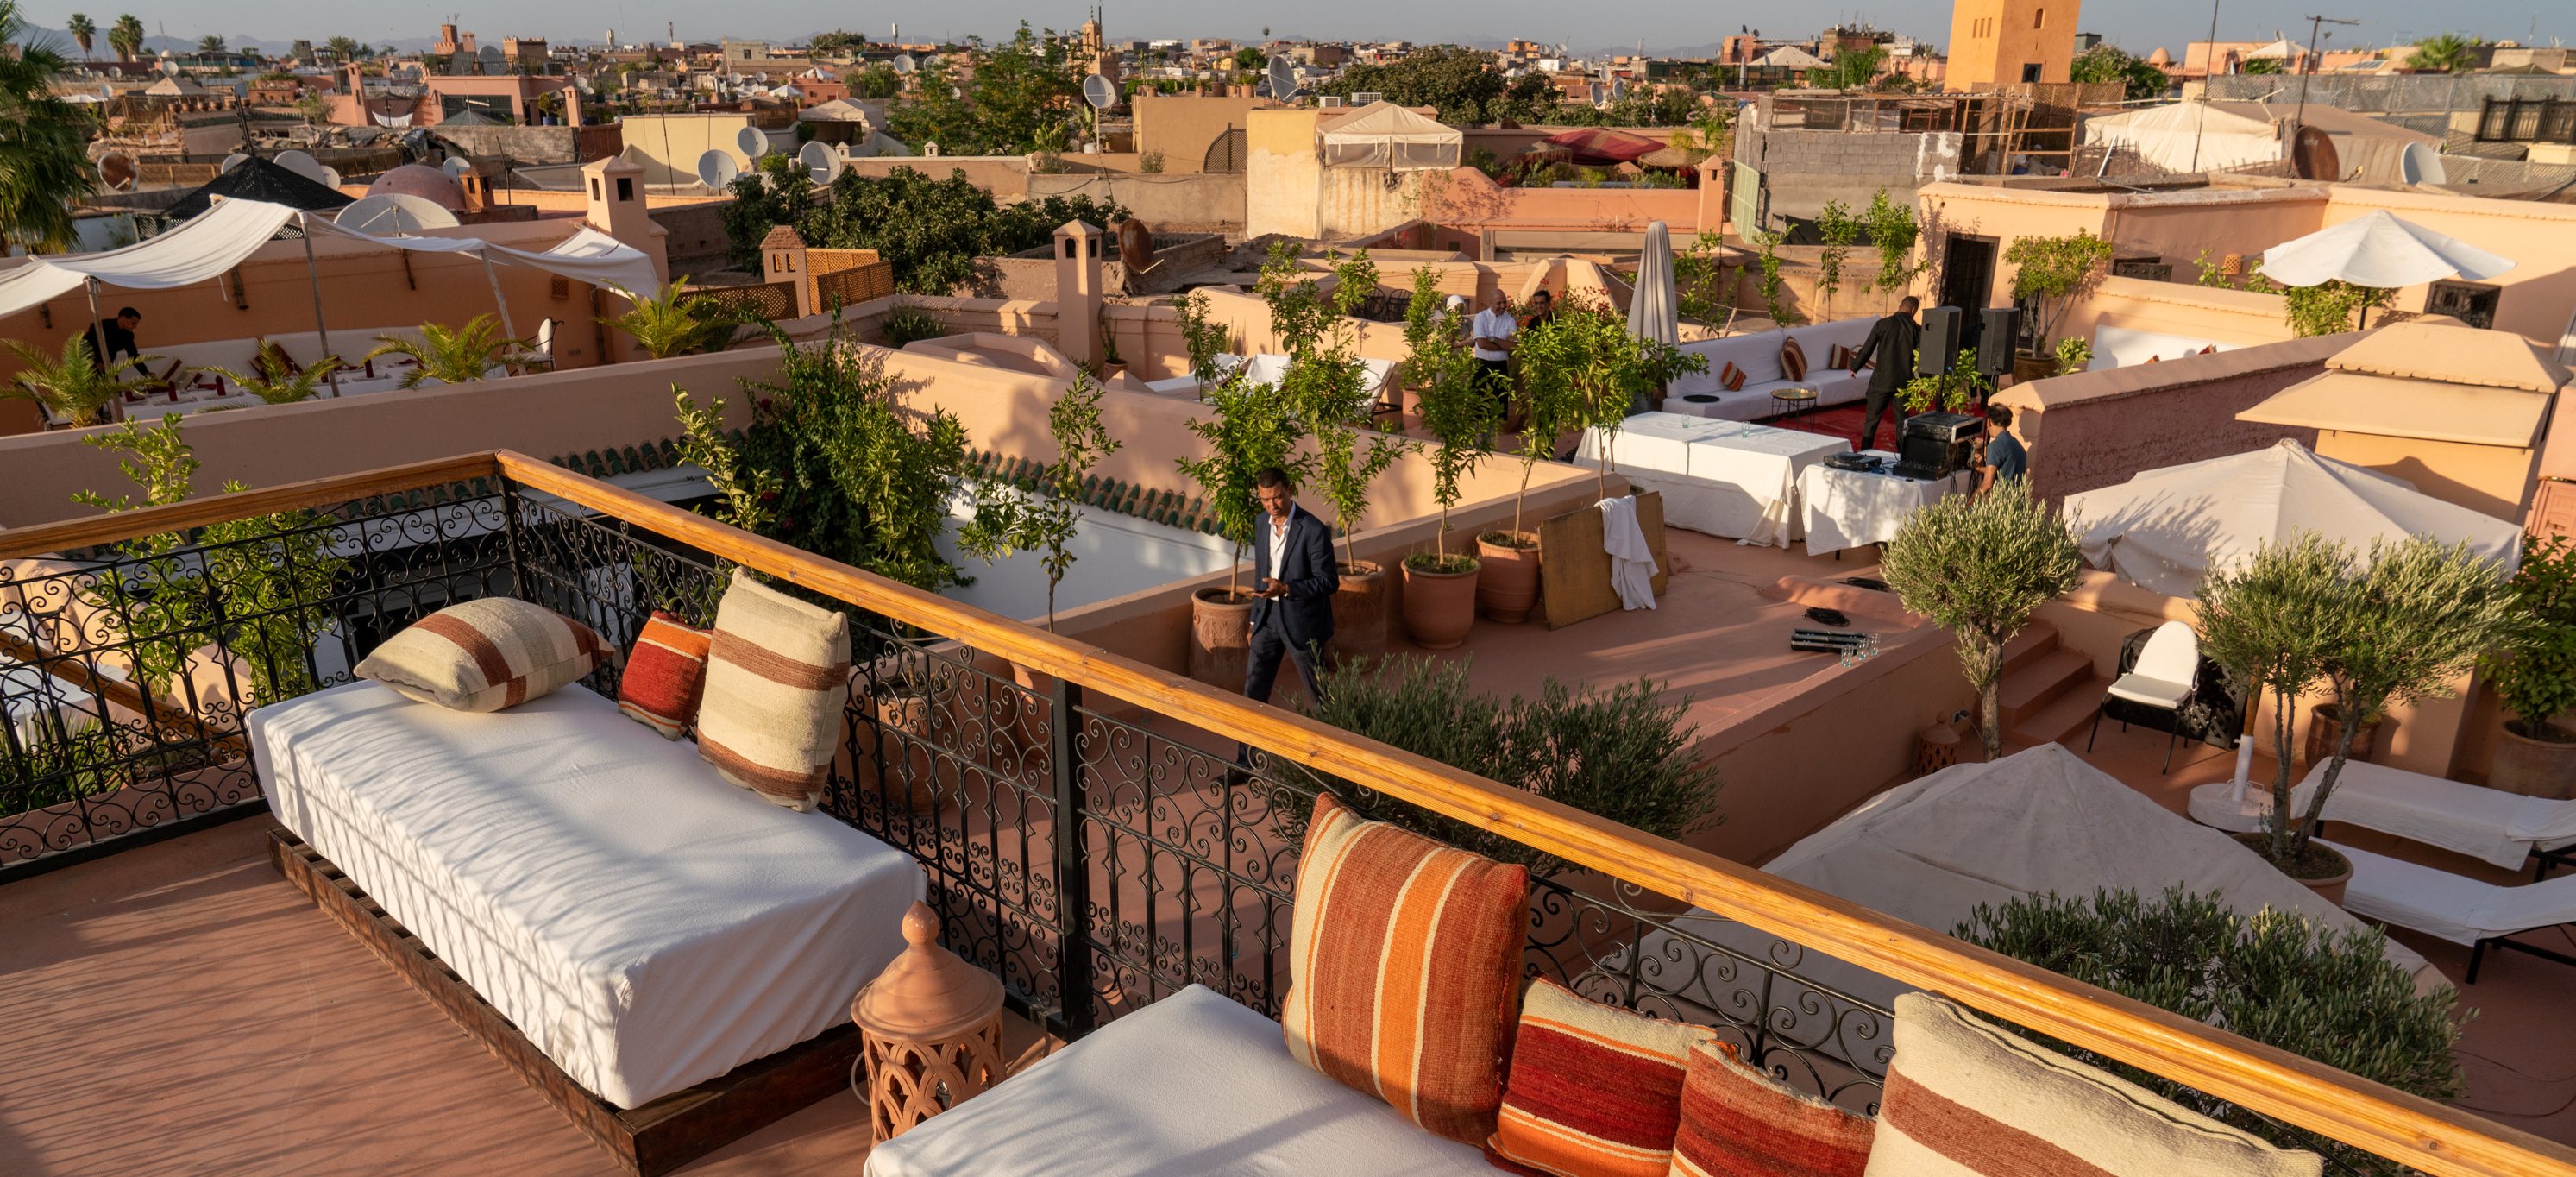 Terasse in Marrakesch, mit Blick über die Altstadt